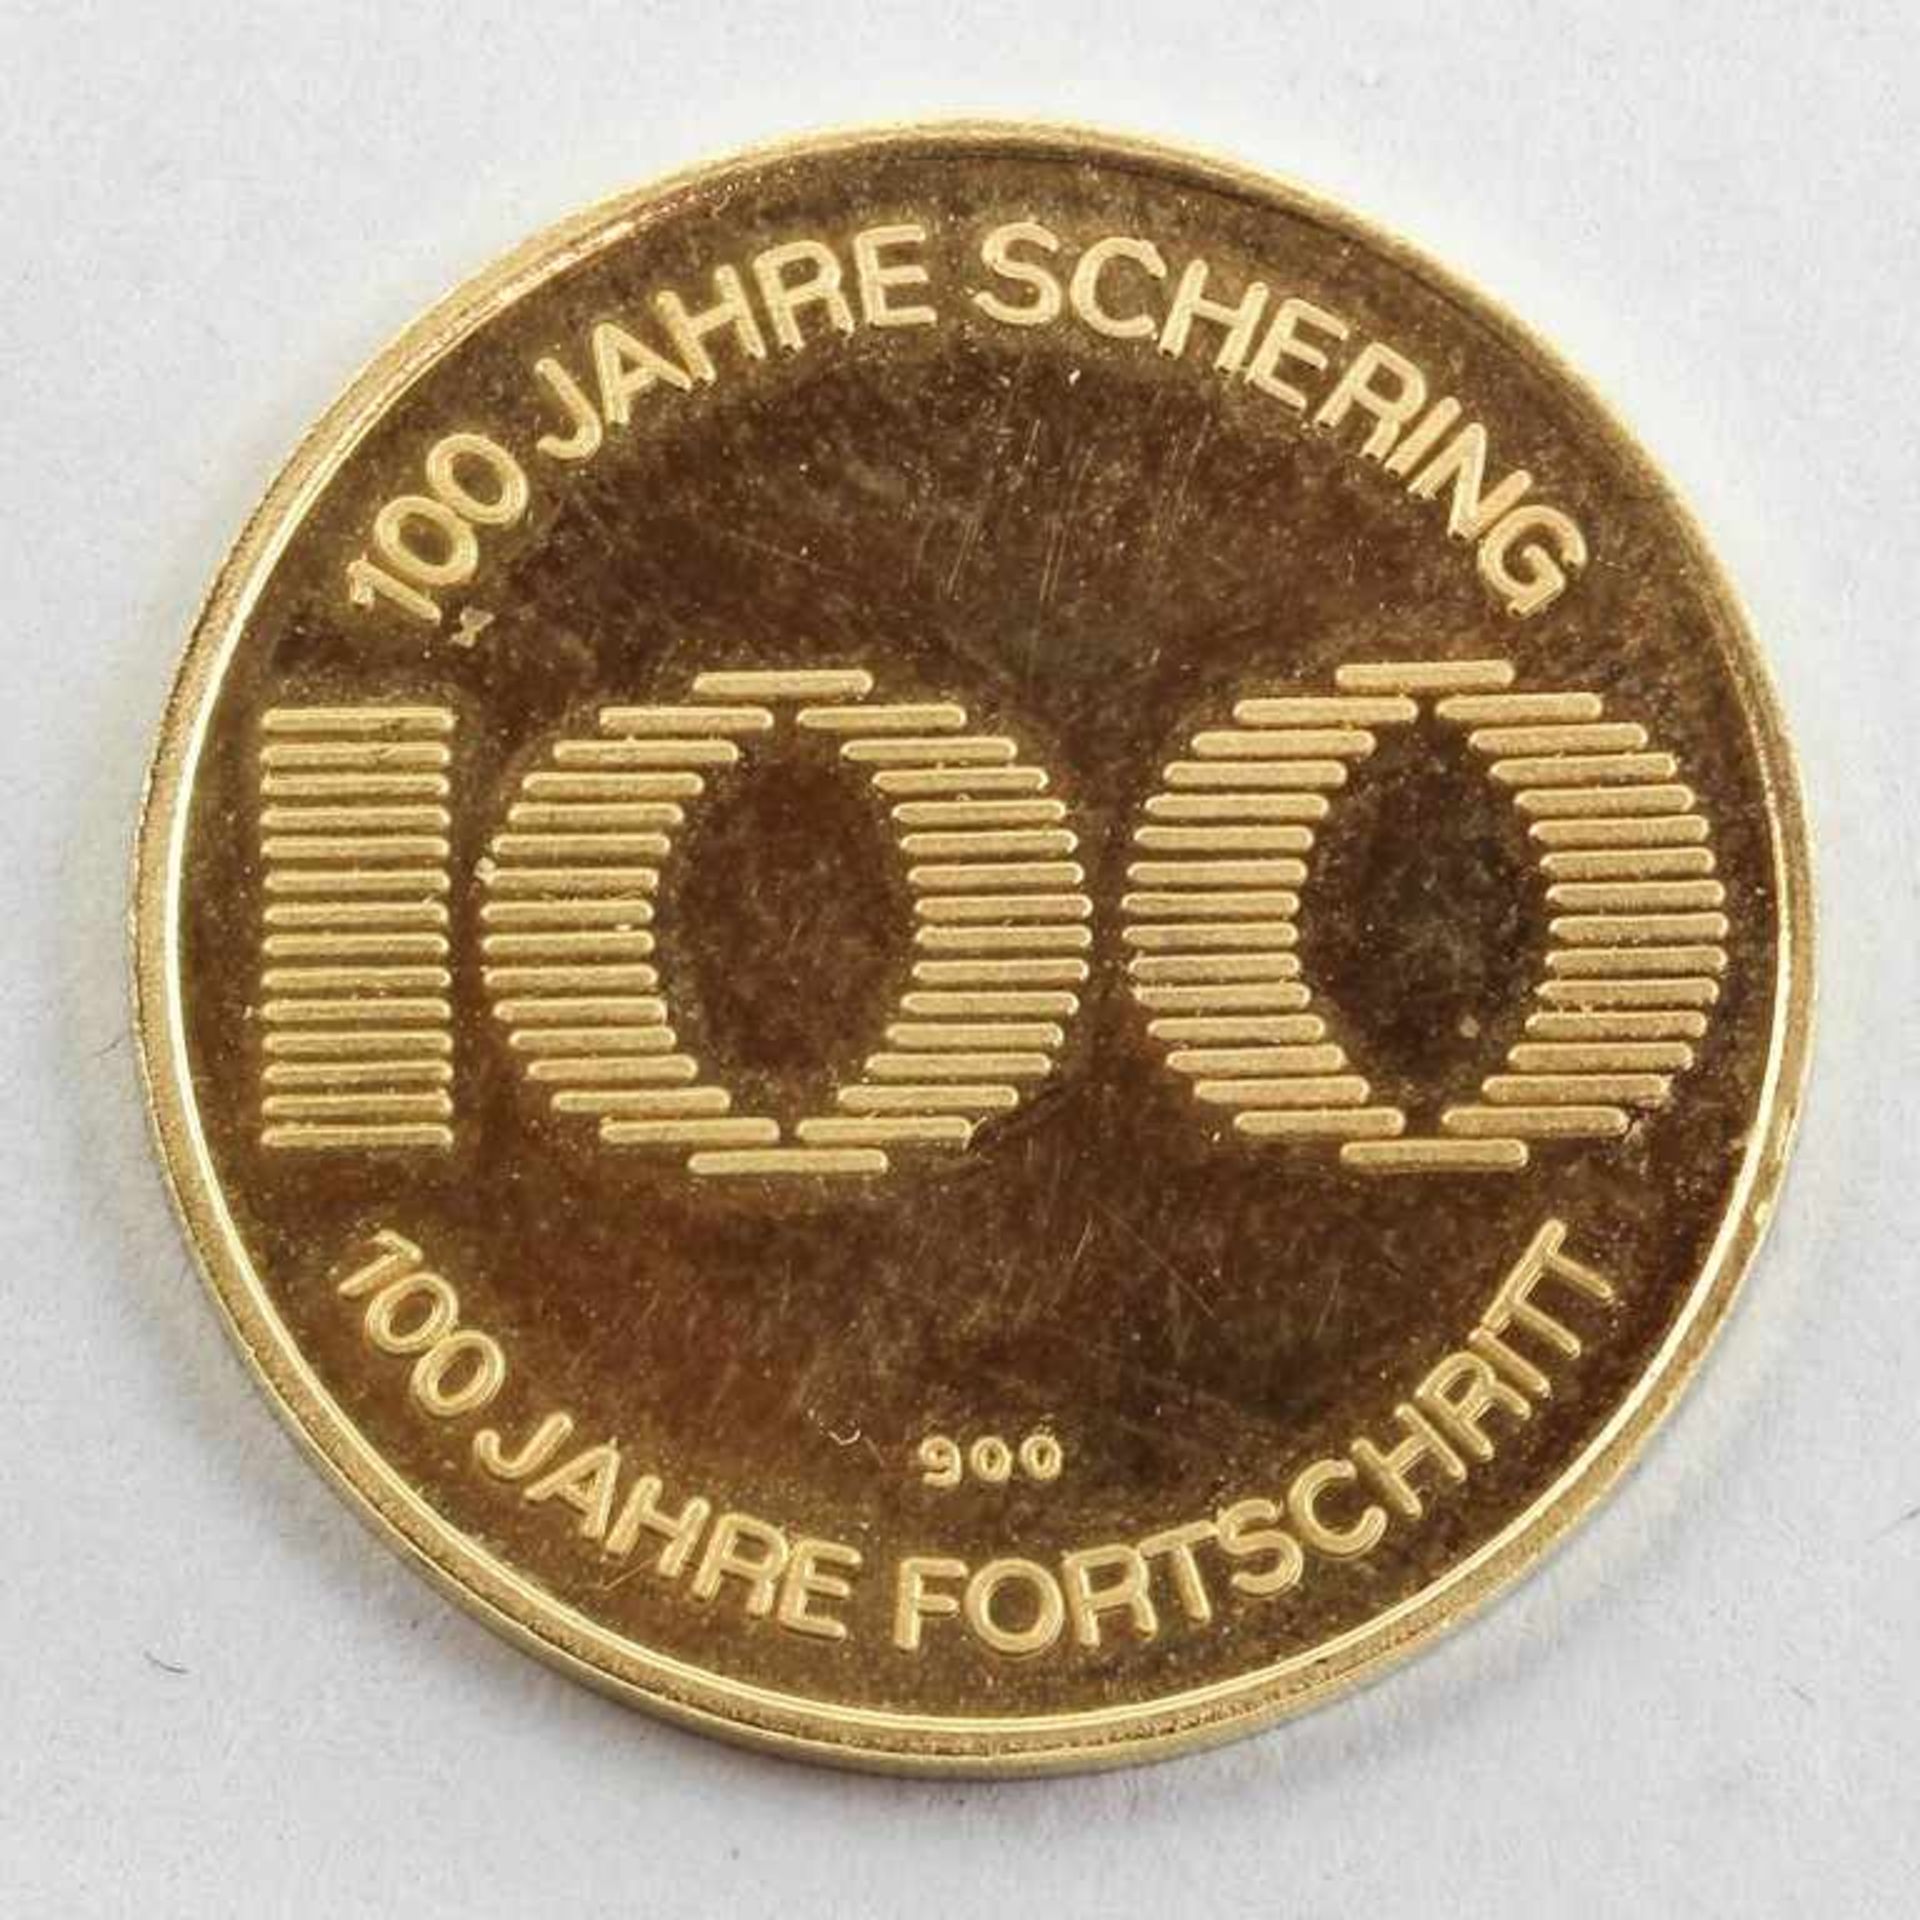 Gedenkmedaille "100 Jahre Schering".